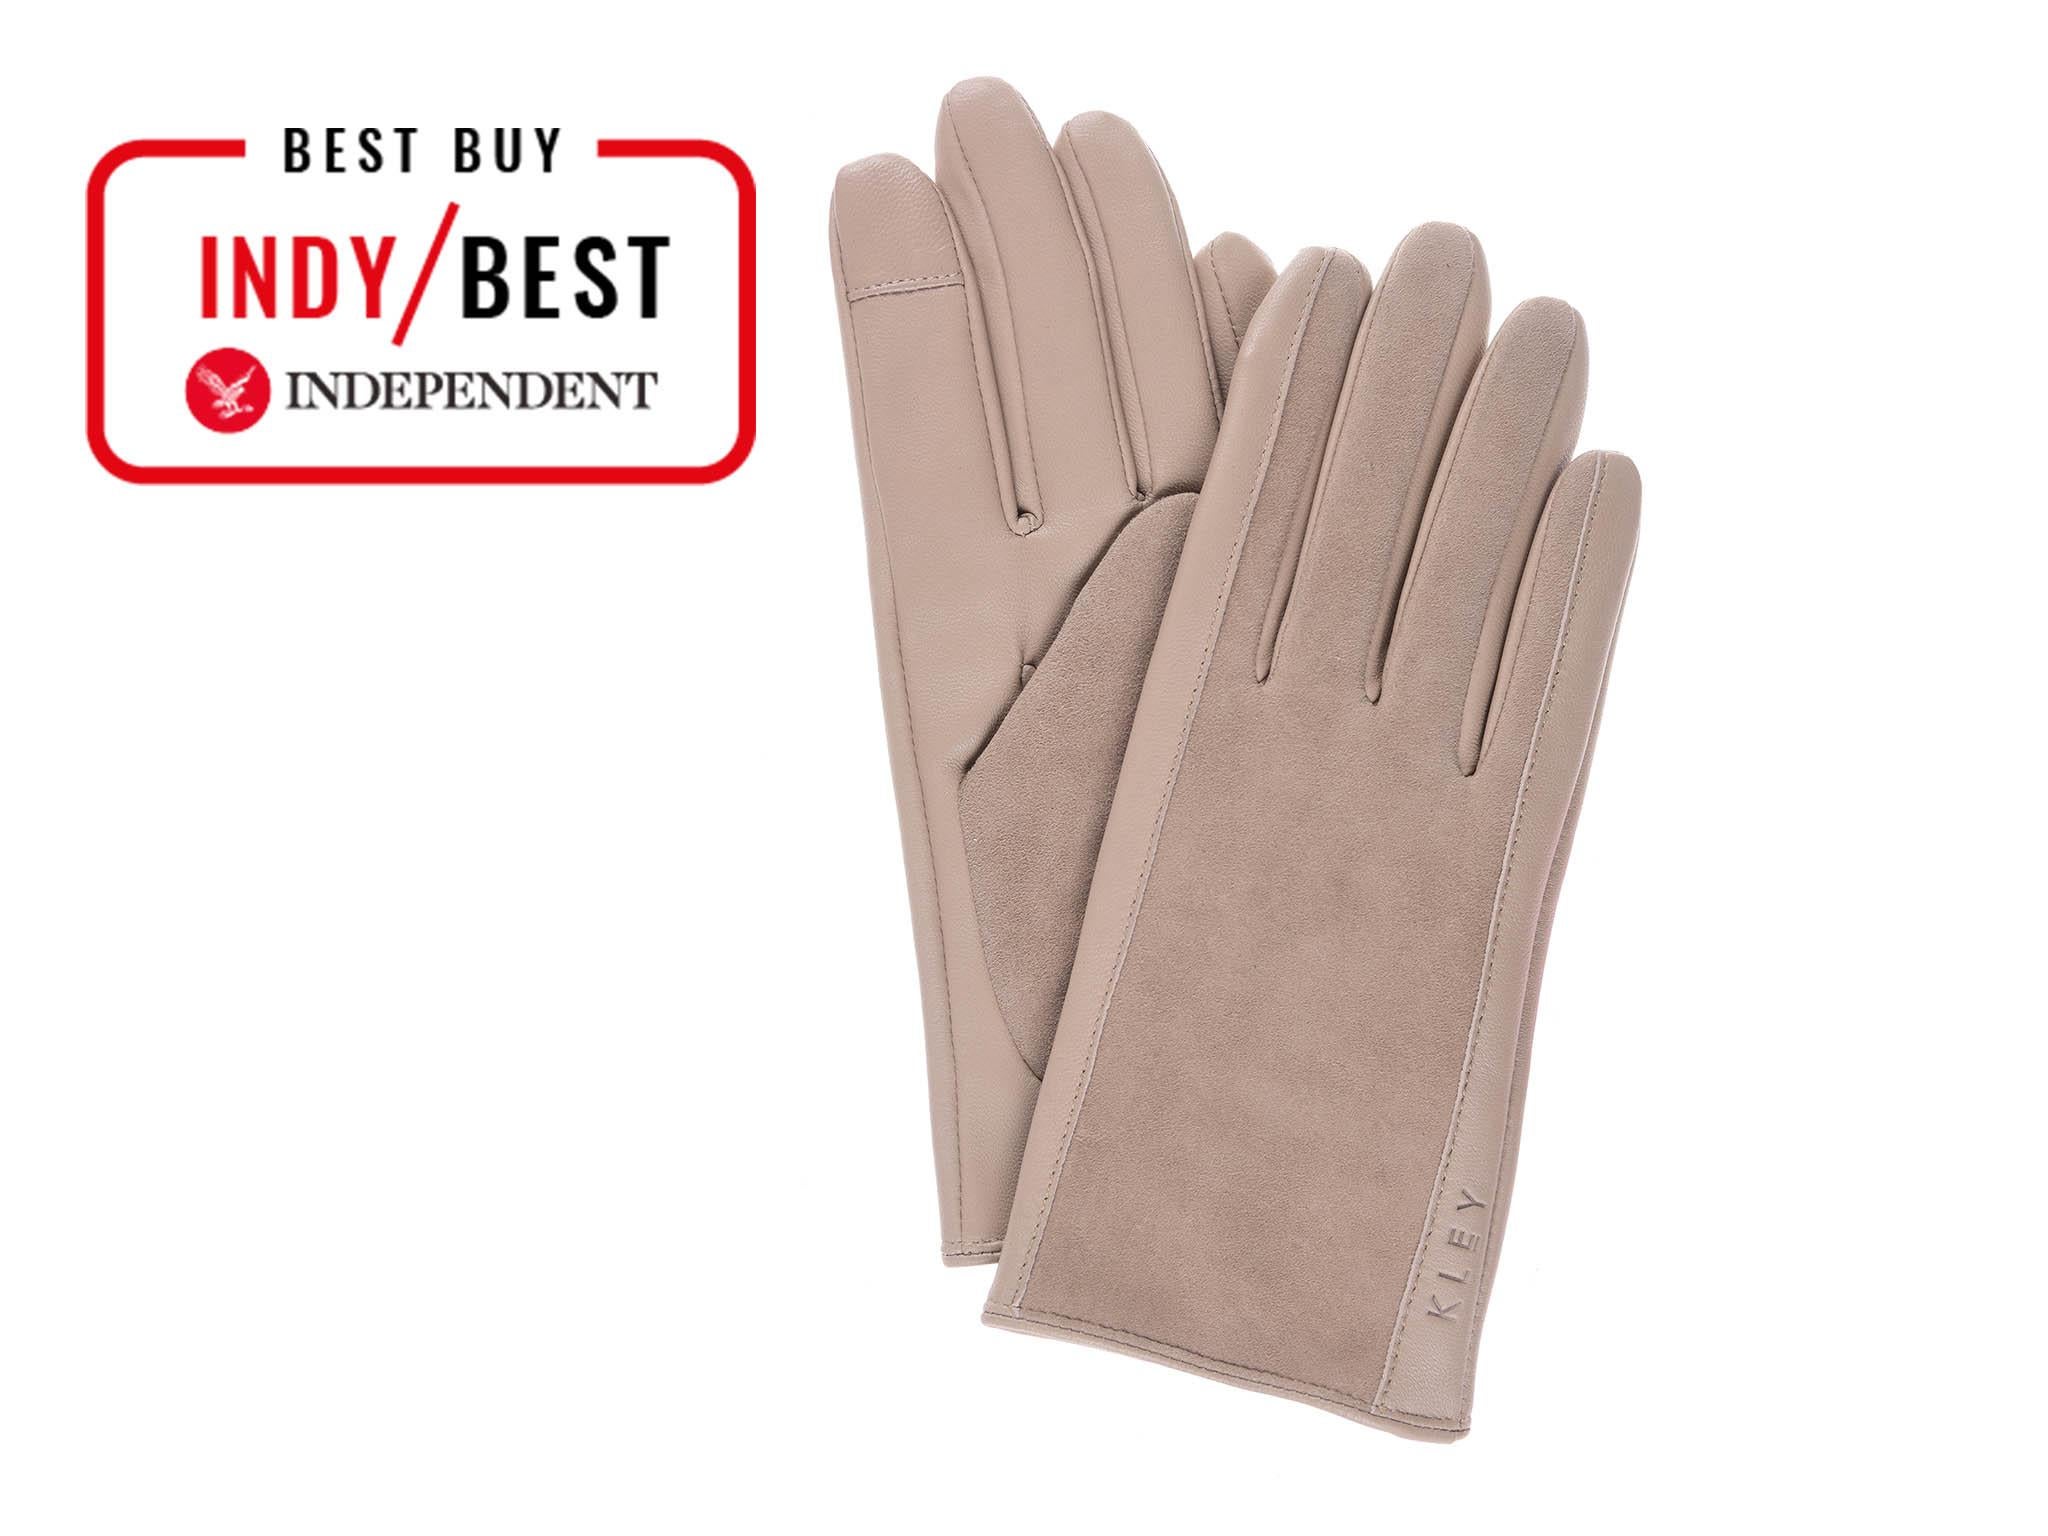 Vegan Lightweight Gloves Ready to Post Slim Fit Gloves Acrylic Gloves Accessories Gloves & Mittens Gardening & Work Gloves Sparkly Light Teal Gloves 